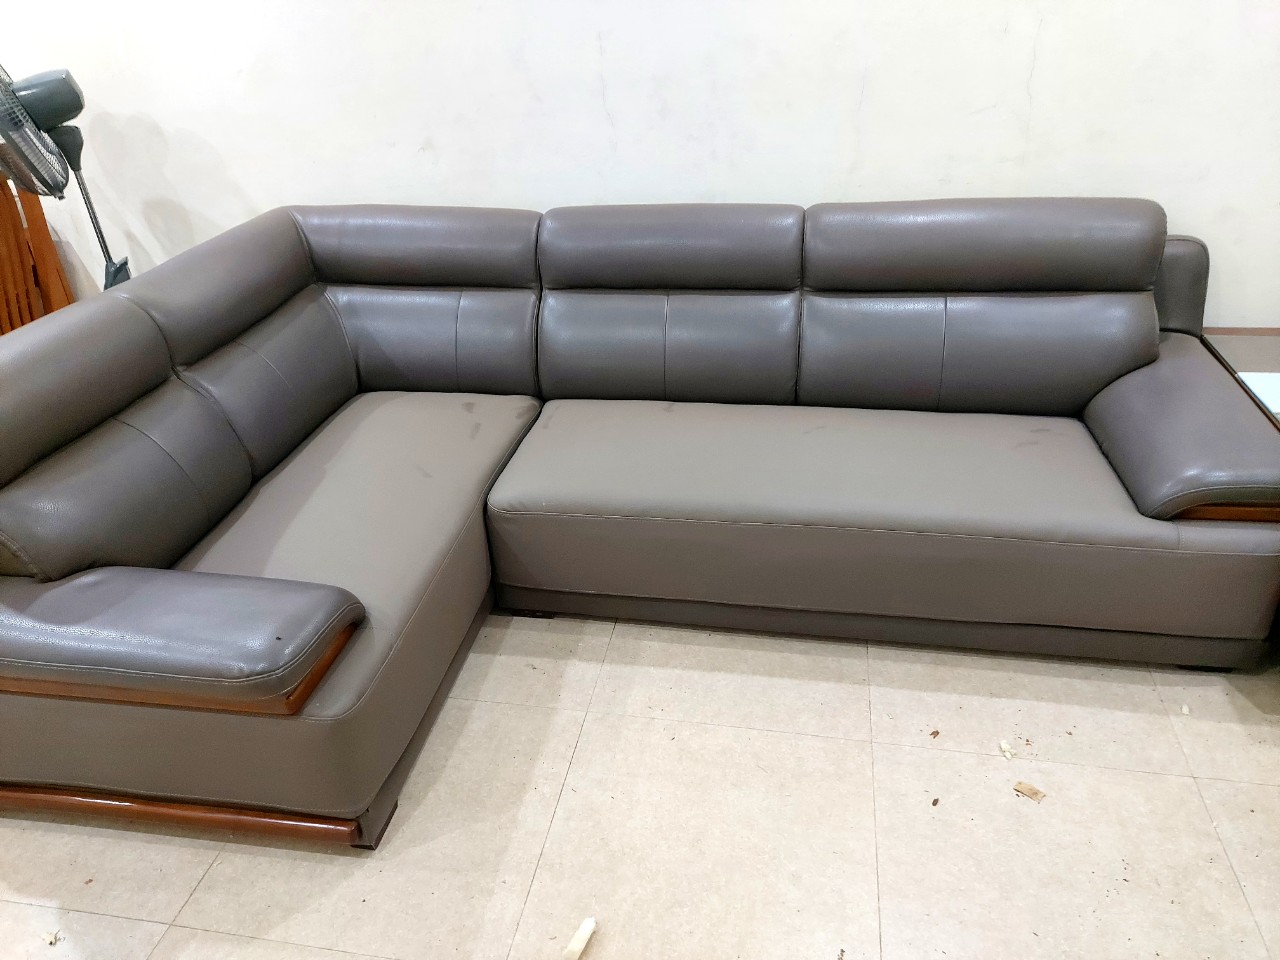 Dịch vụ bọc ghế sofa tại nhà uy tín, chất lượng nhất khu vực Hà Nội